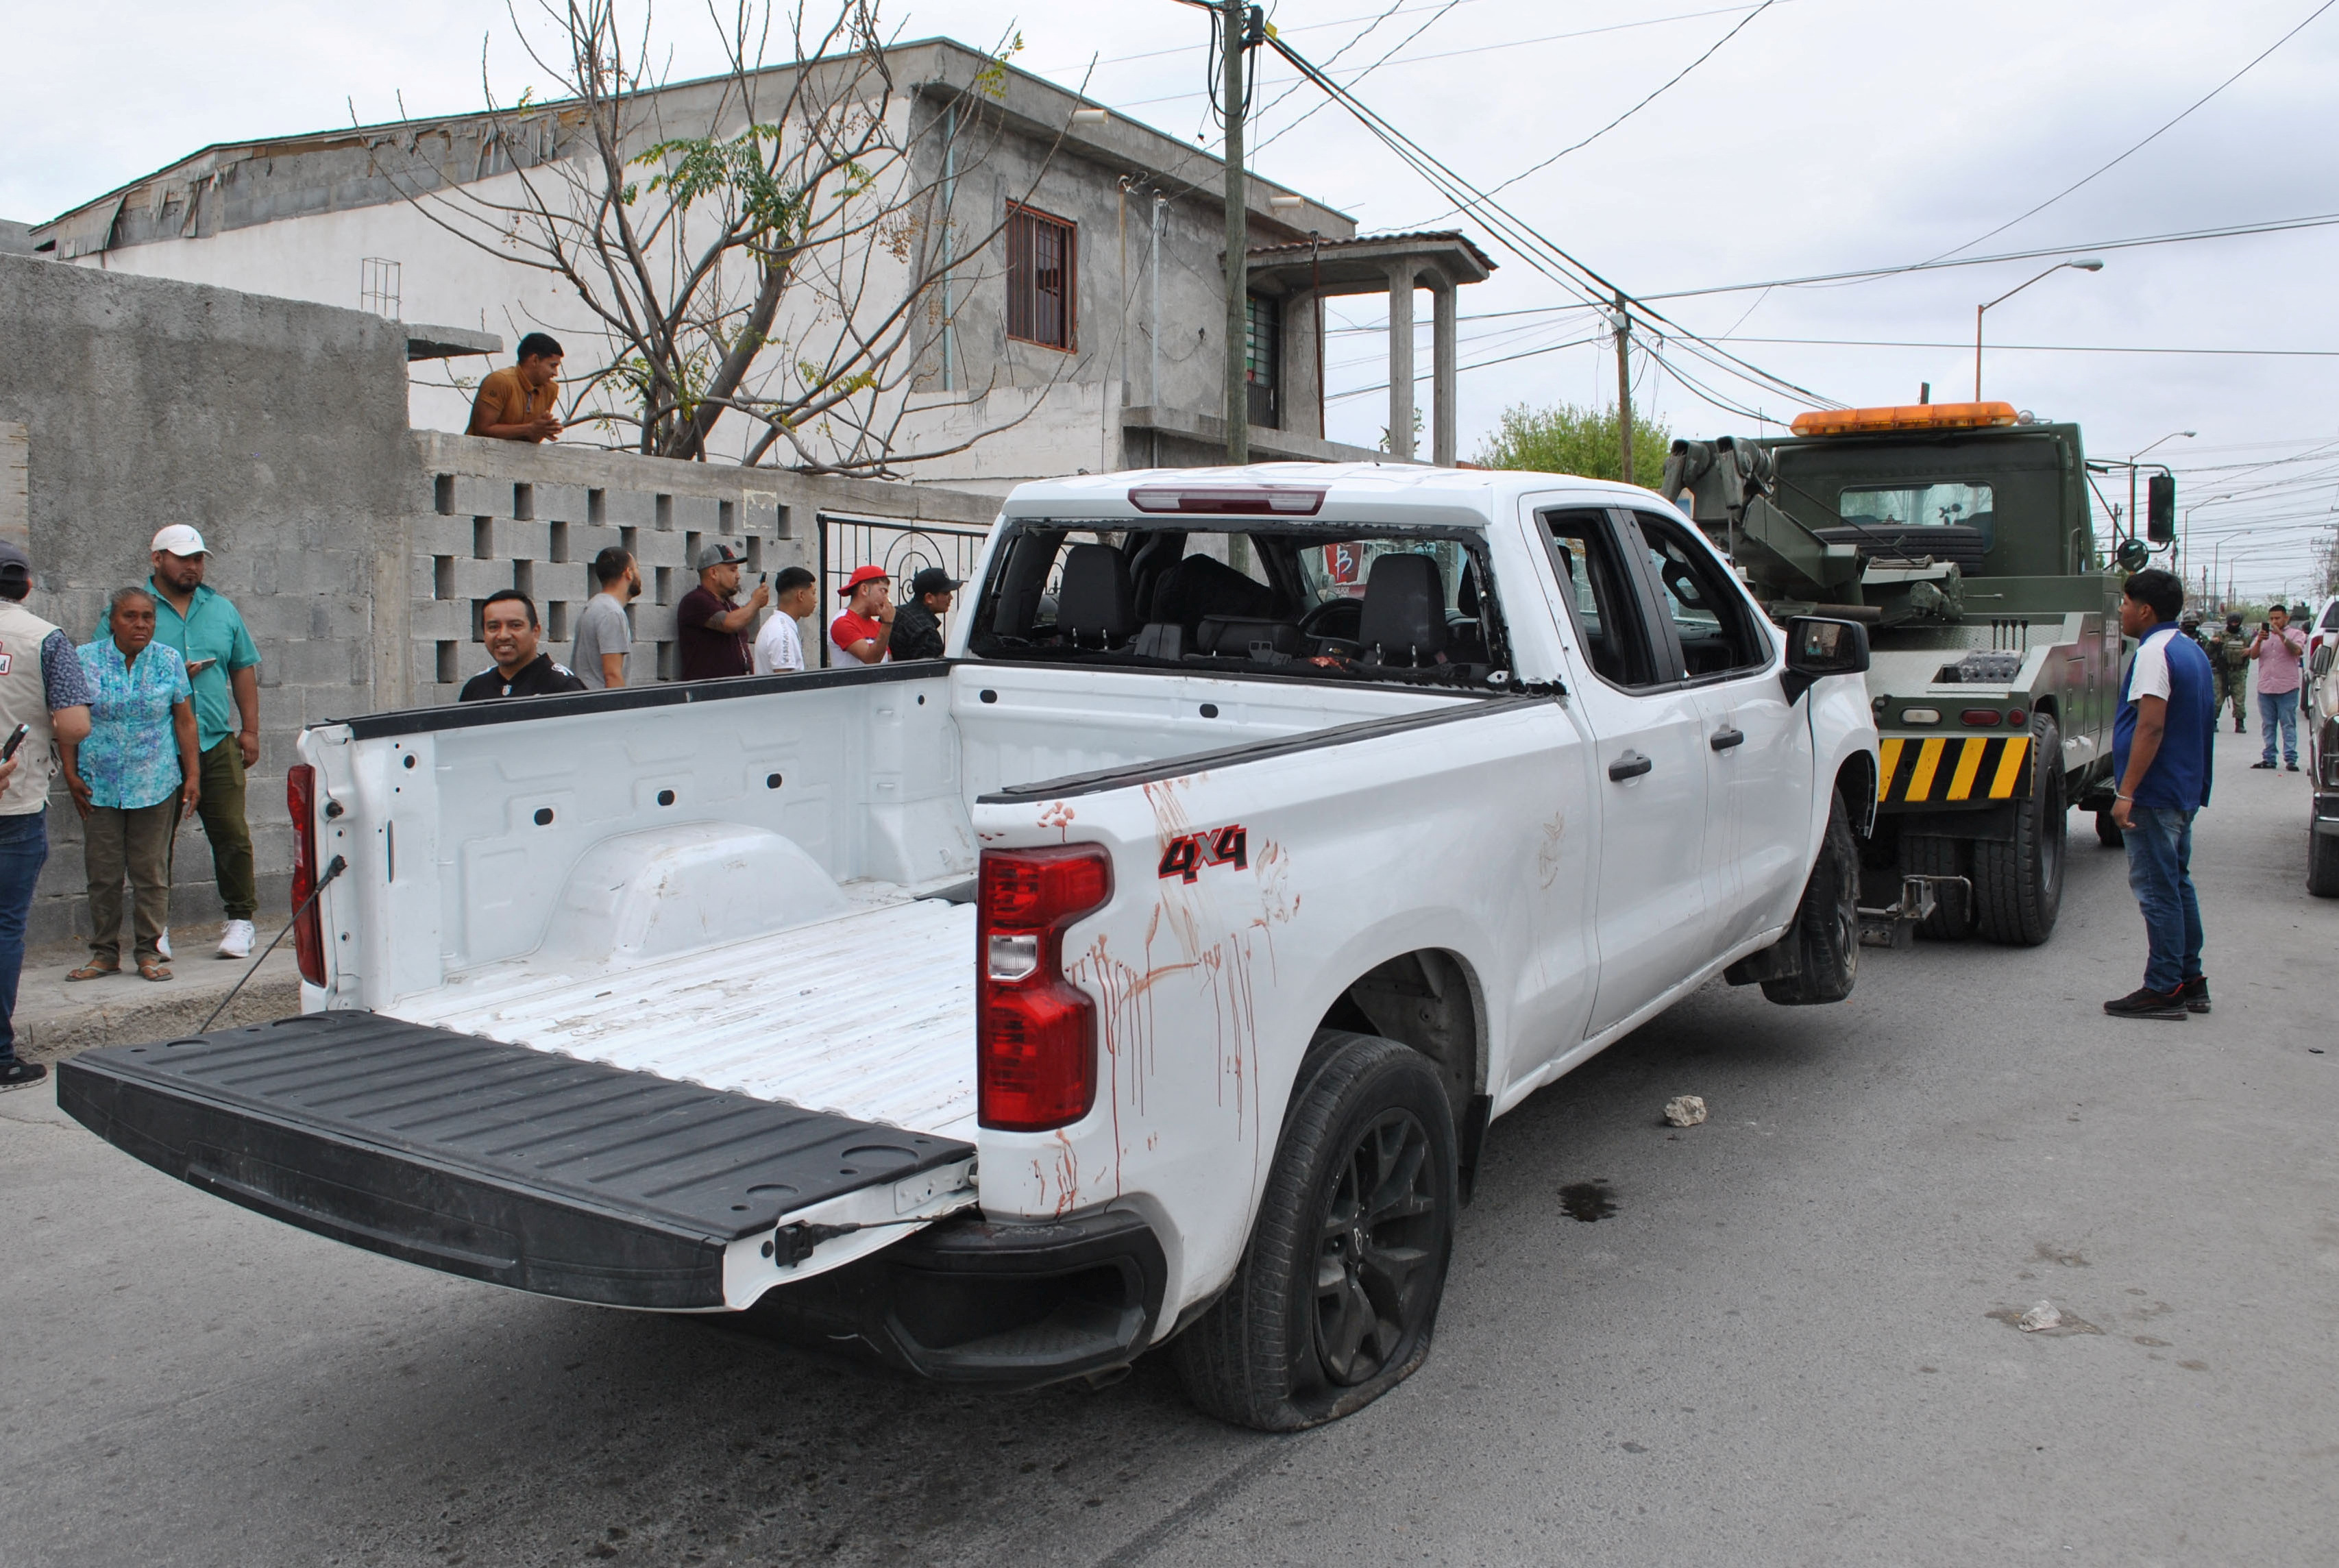 Otro de los organismos que se pronunció por la muerte de cinco personas en Nuevo Laredo fue la ONU
(Foto: REUTERS/Jasiel Rubio)